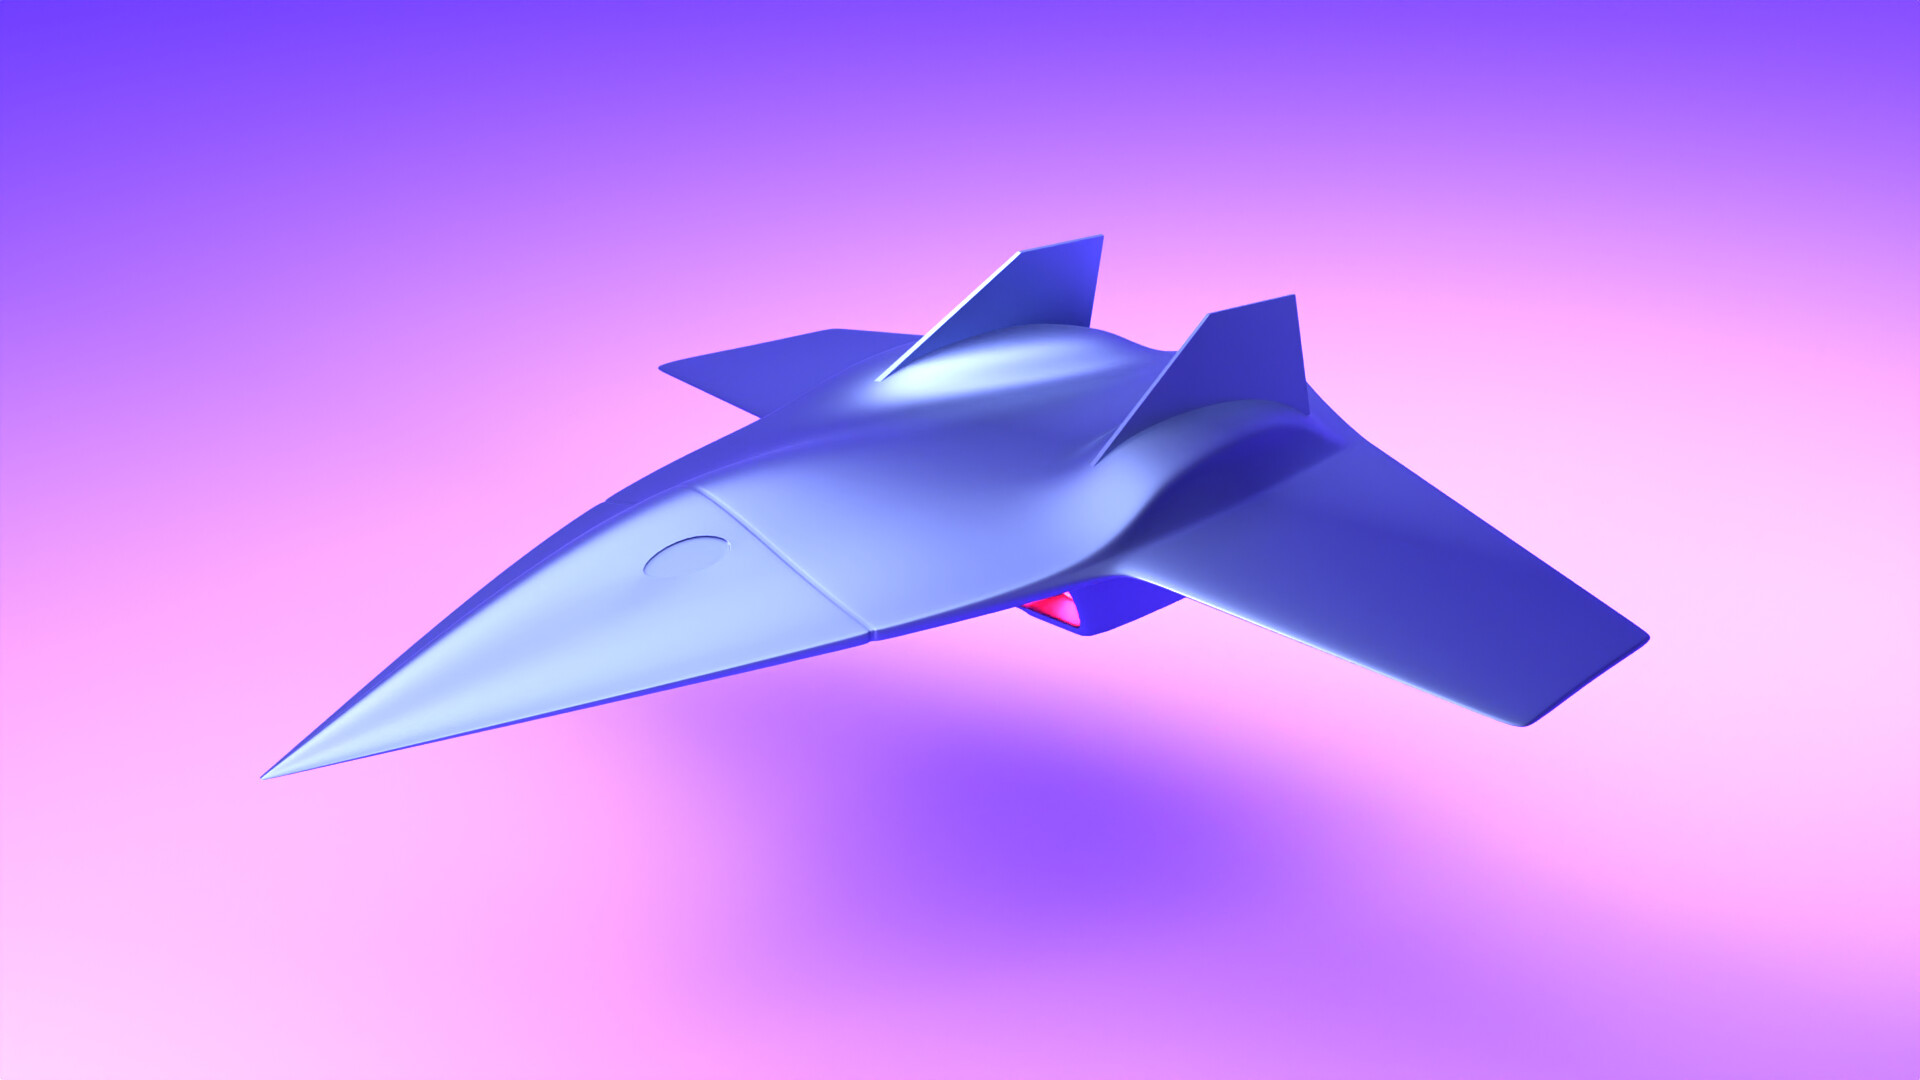 ArtStation - 3D Aircraft Modeling